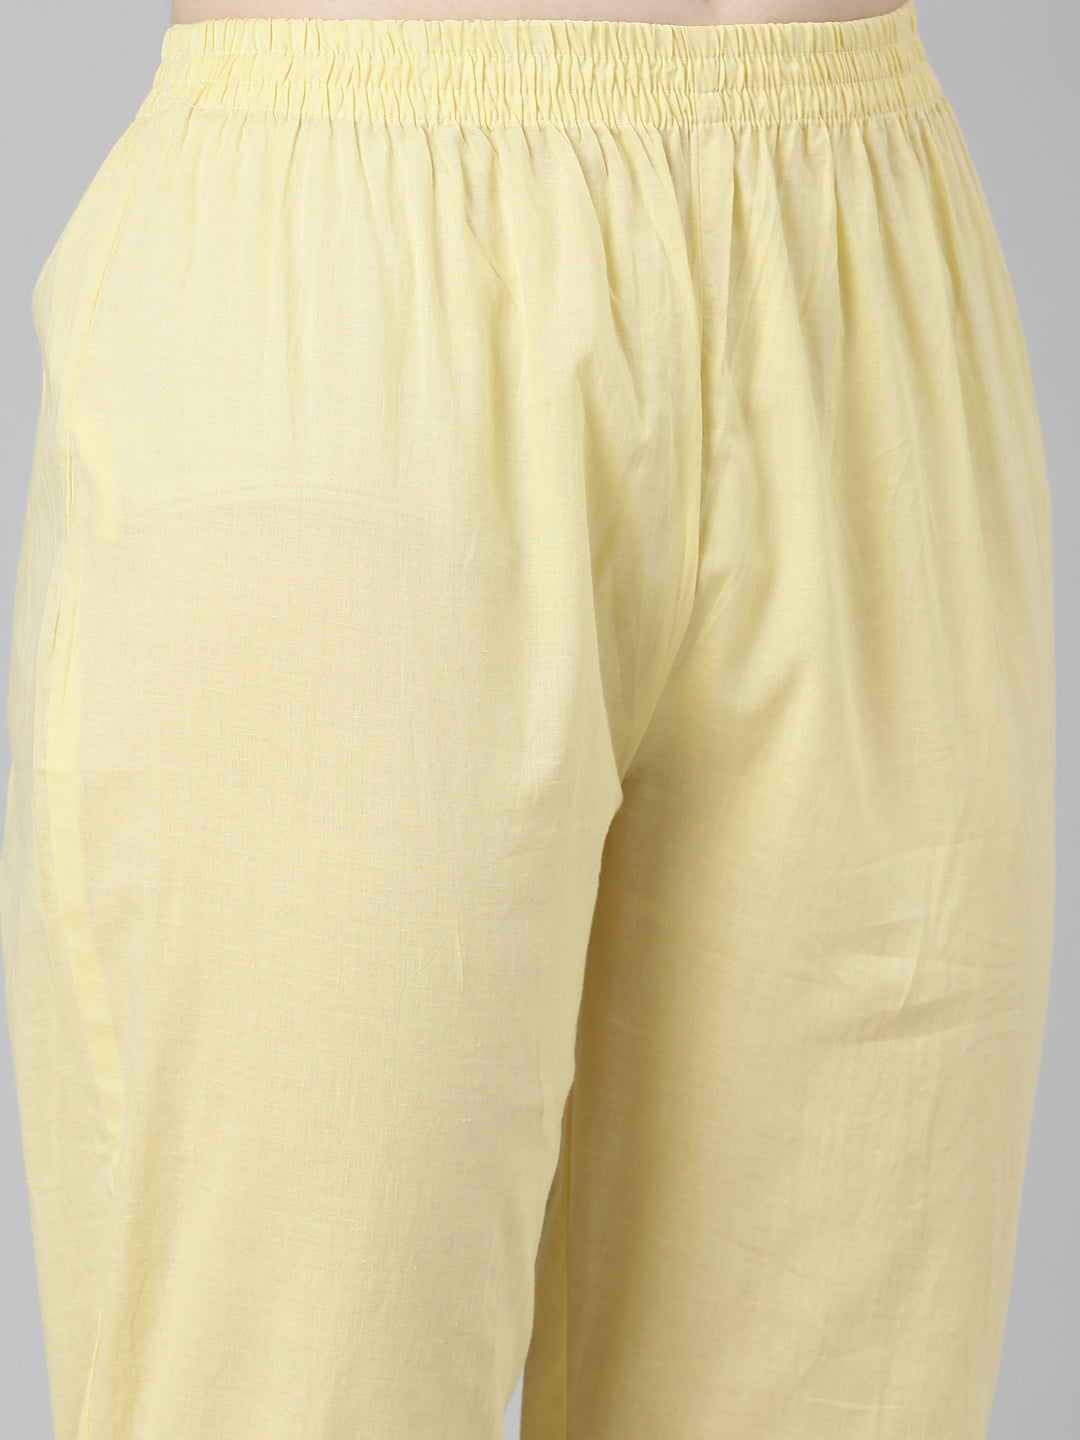 Neerus Yellow Regular Straight Printed Kurta And Trousers With Dupatta